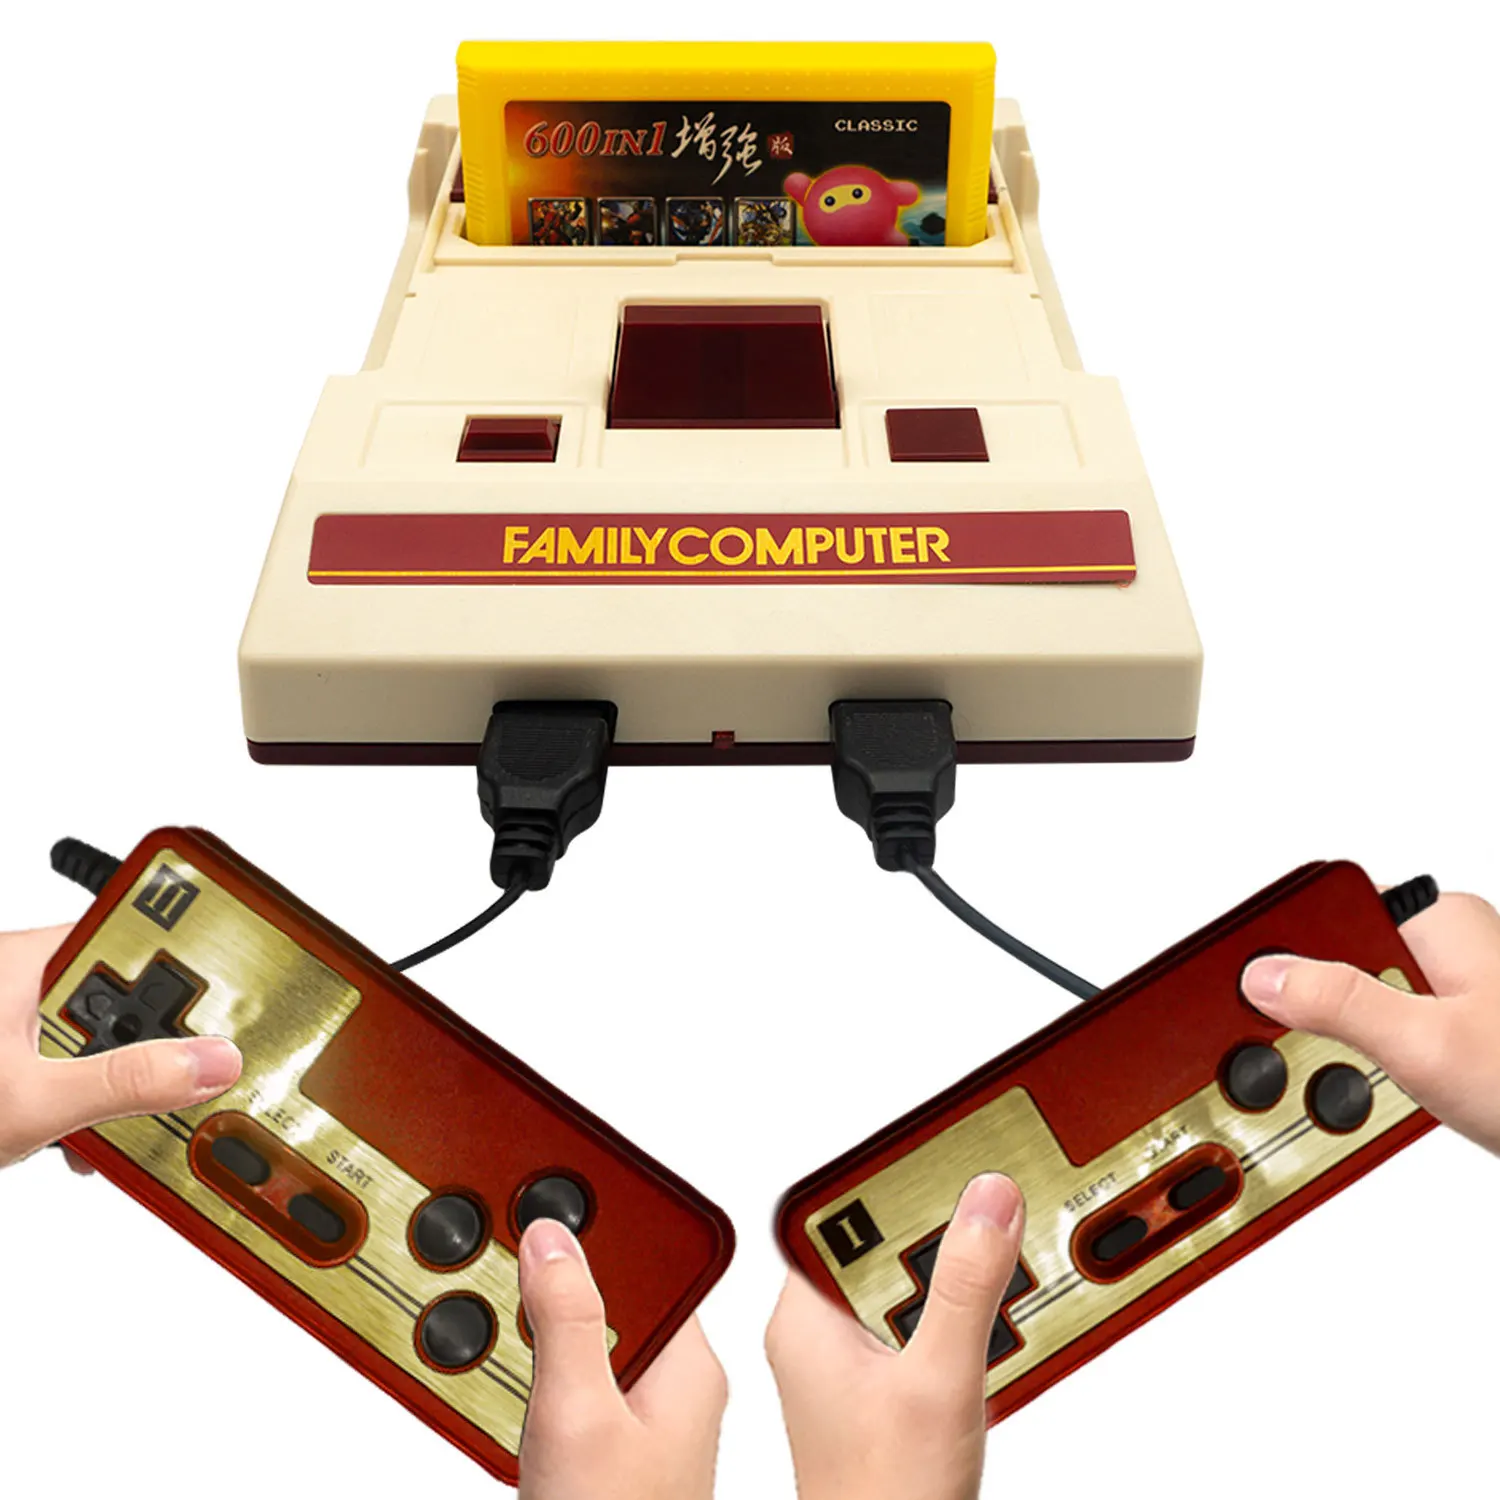 8 bit vídeo game console construído em 500 jogos clássicos família